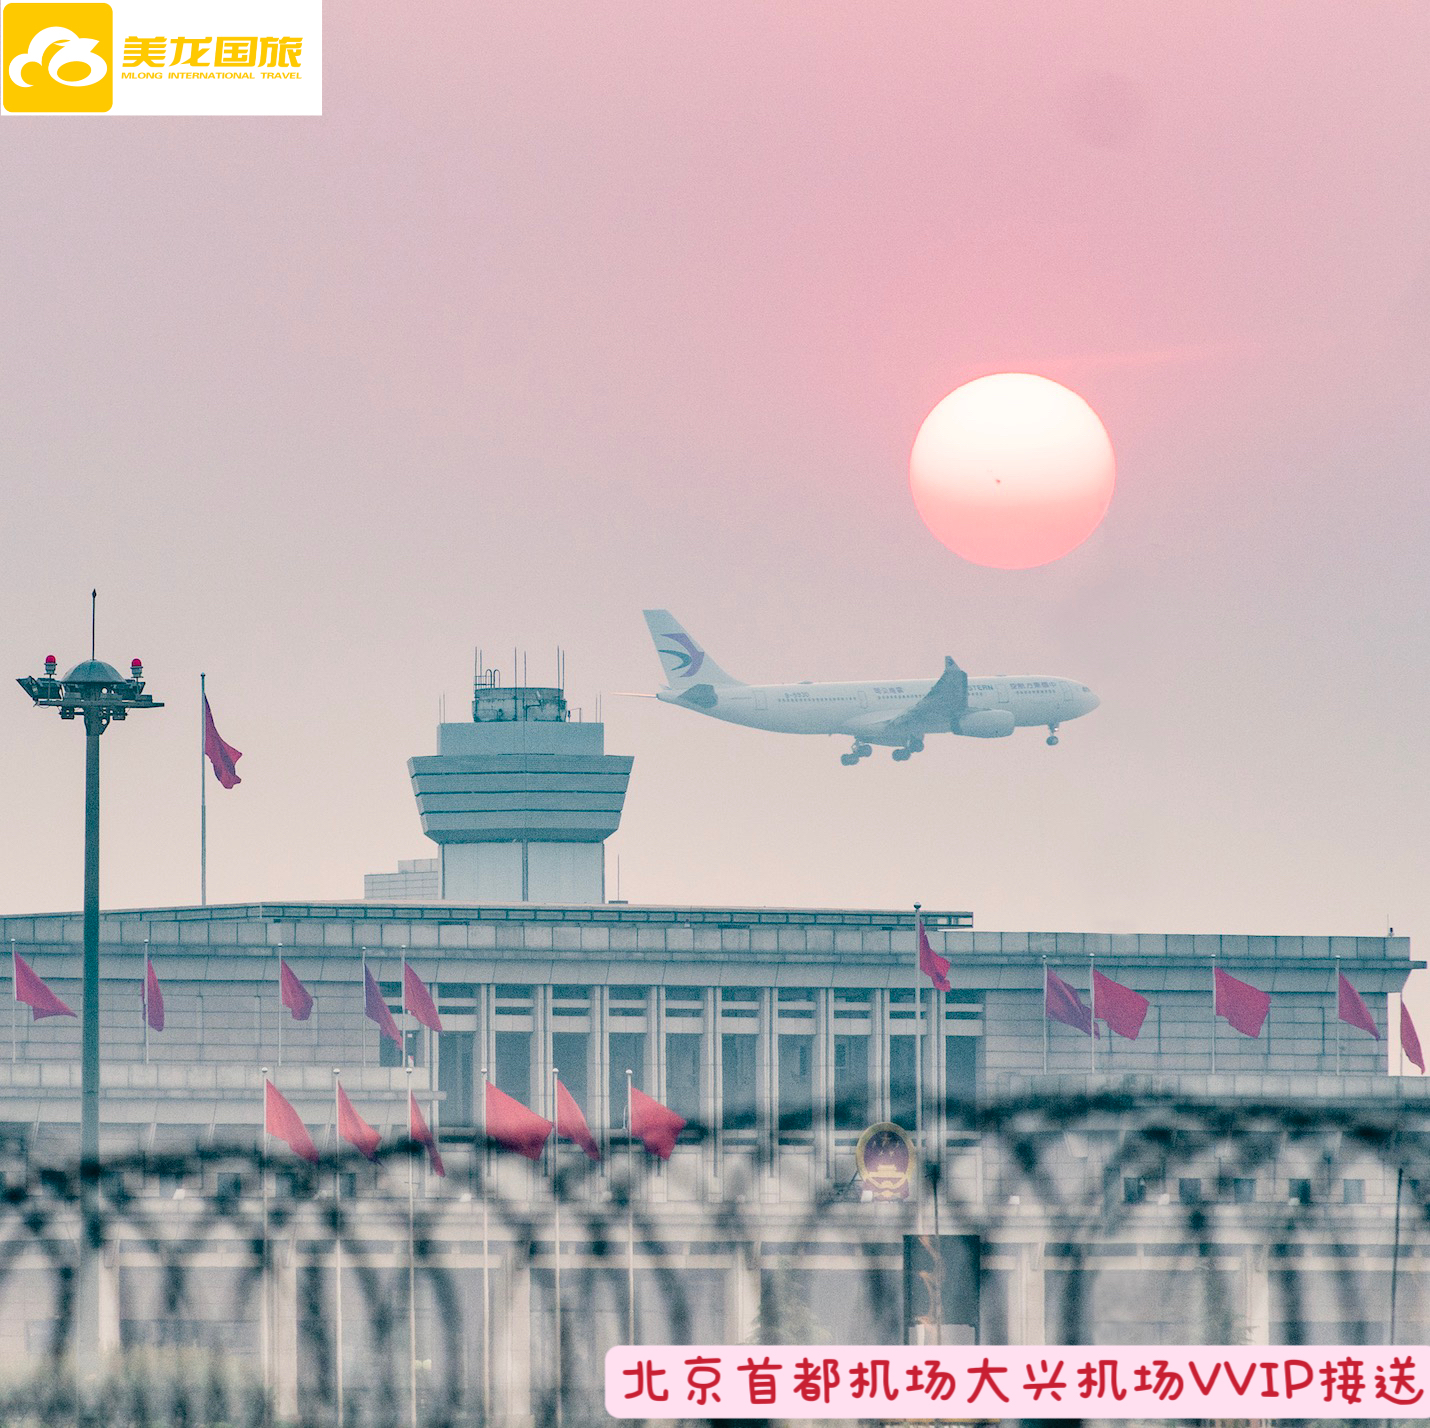 北京首都国际机场大兴机场VVIP机场通道贵宾休息室快速安检边